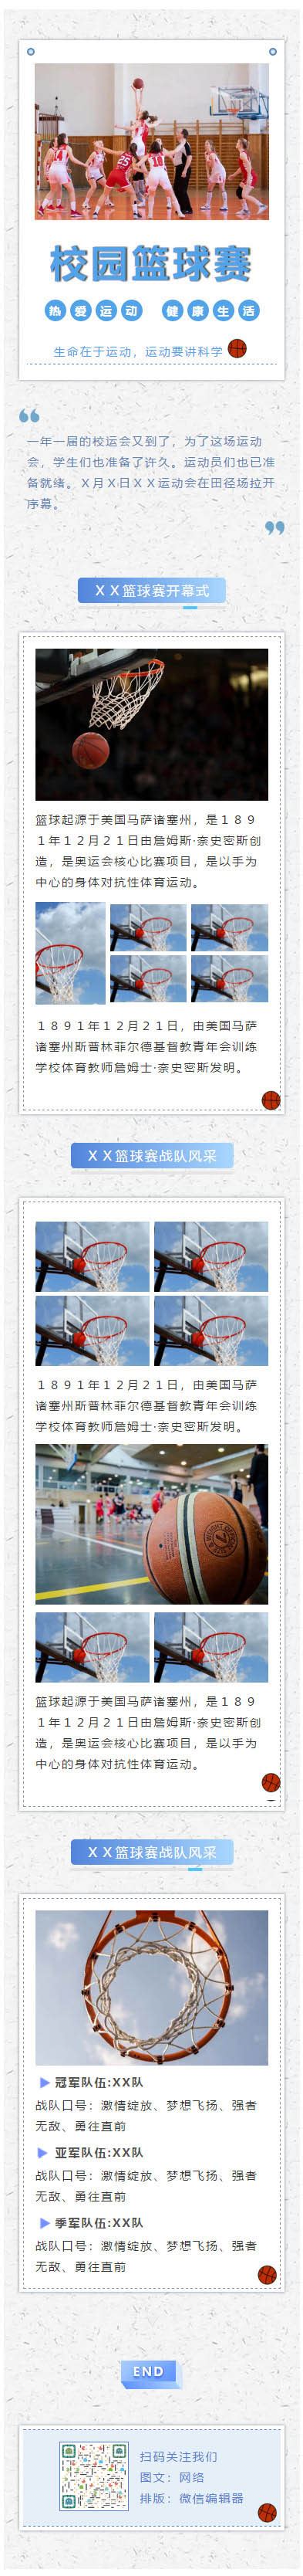 校园篮球赛学校大学运动会校运会教育素材微信模板推送图文章 | 微信公众号文章模板大全